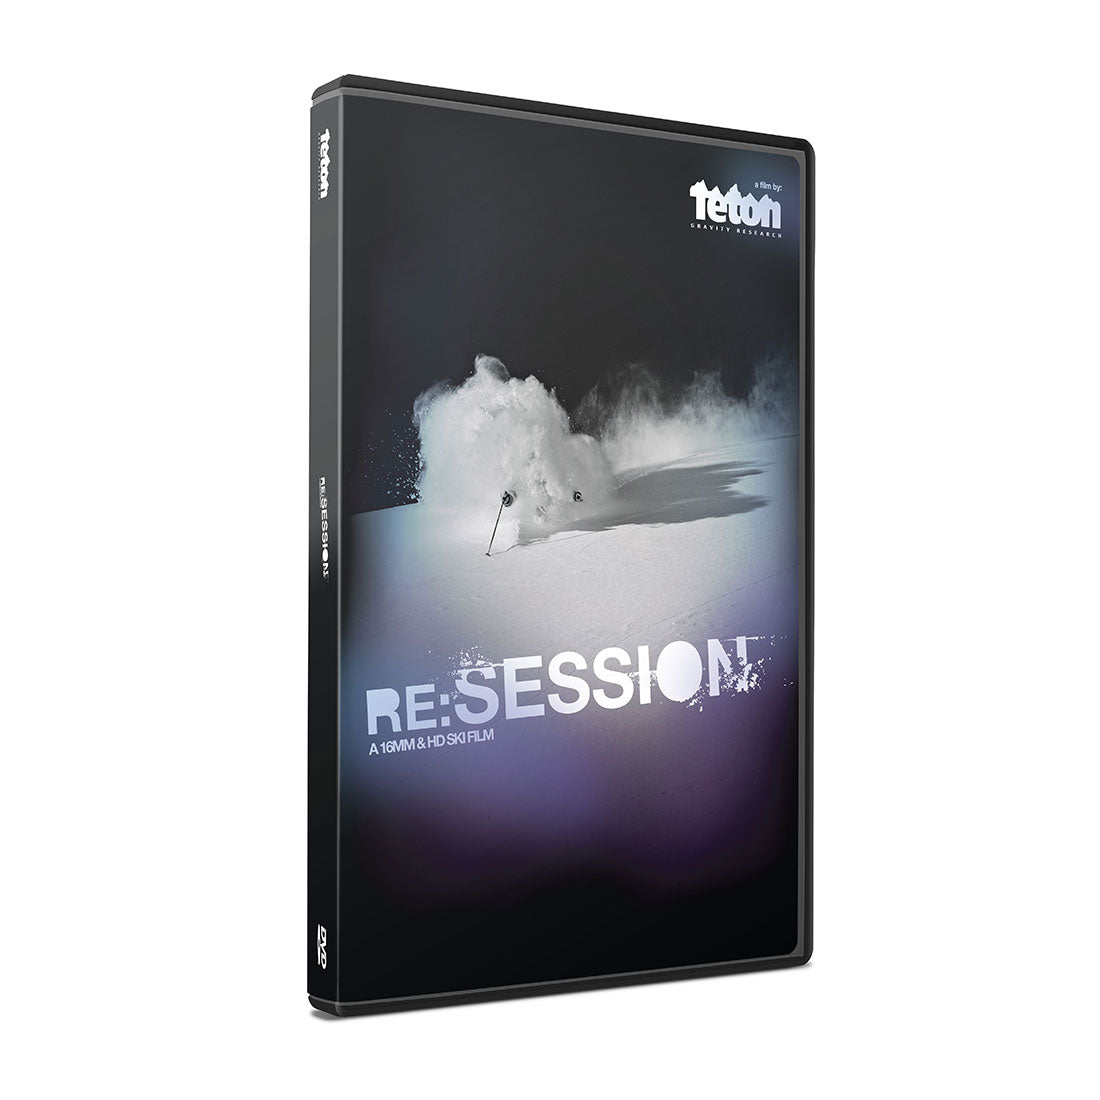 Re:Session DVD - Teton Gravity Research